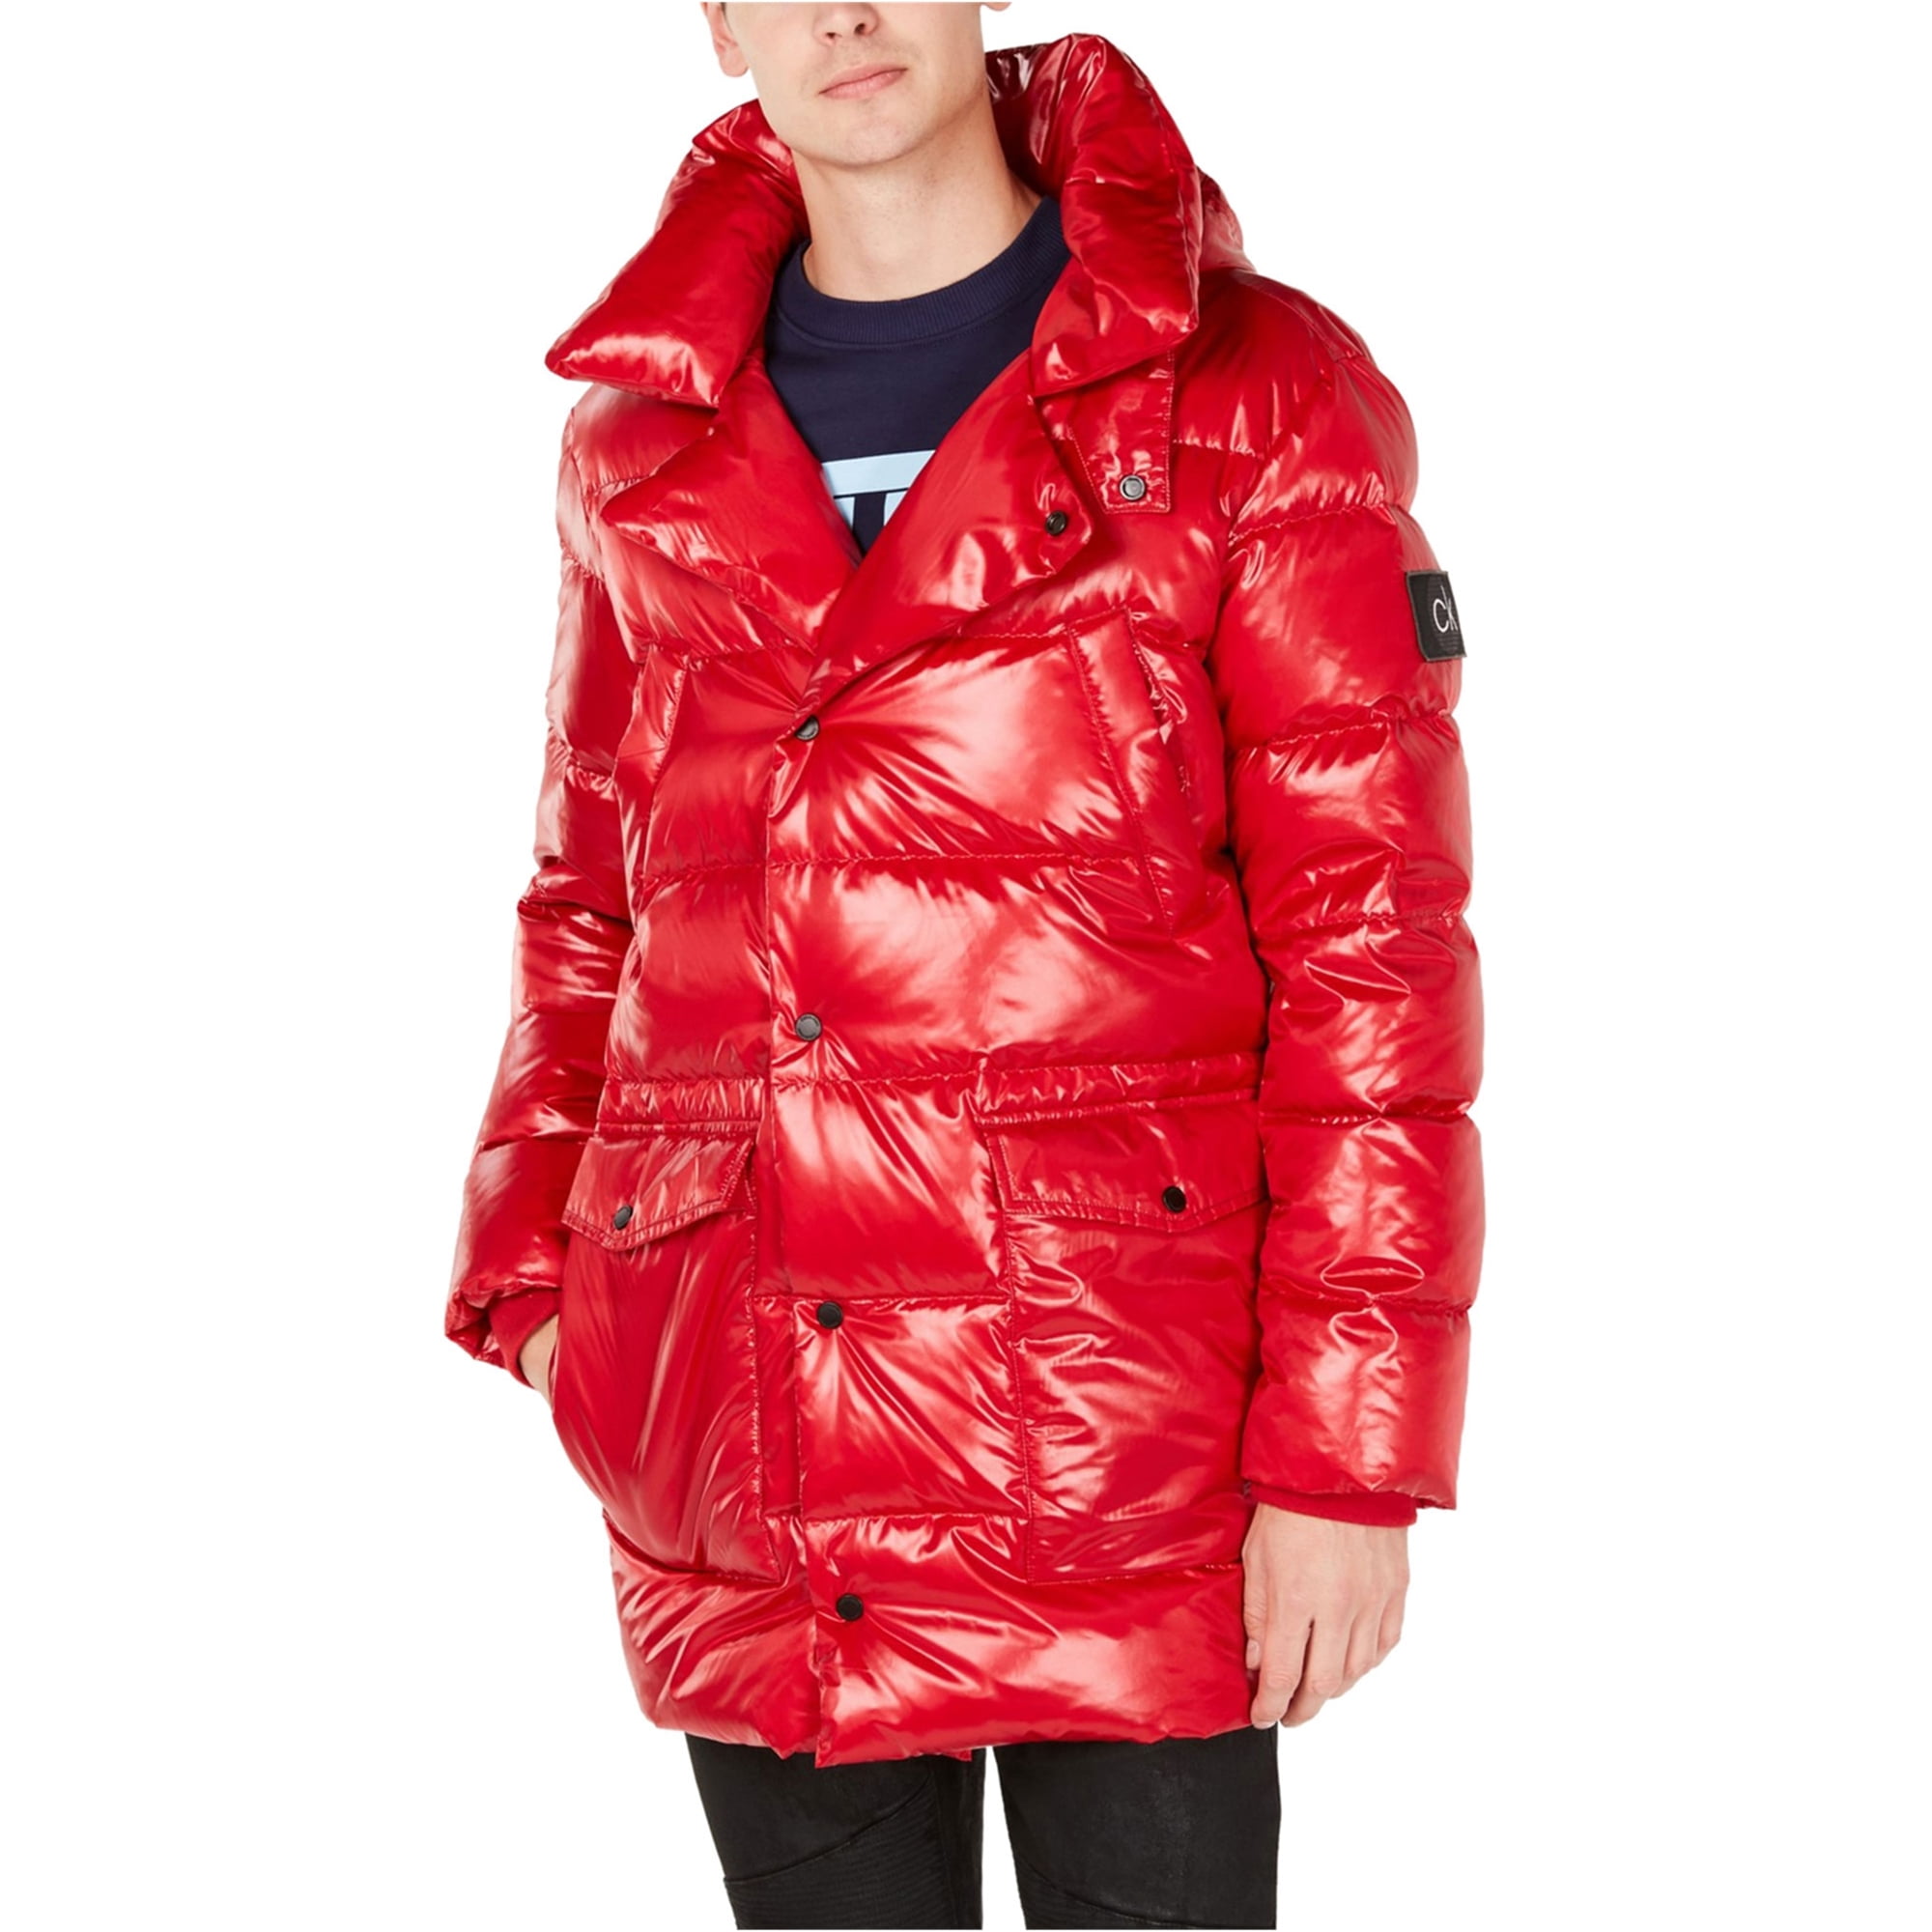 lepel Luik Grondwet Calvin Klein Mens Oversized Puffer Jacket, Red, Small - Walmart.com